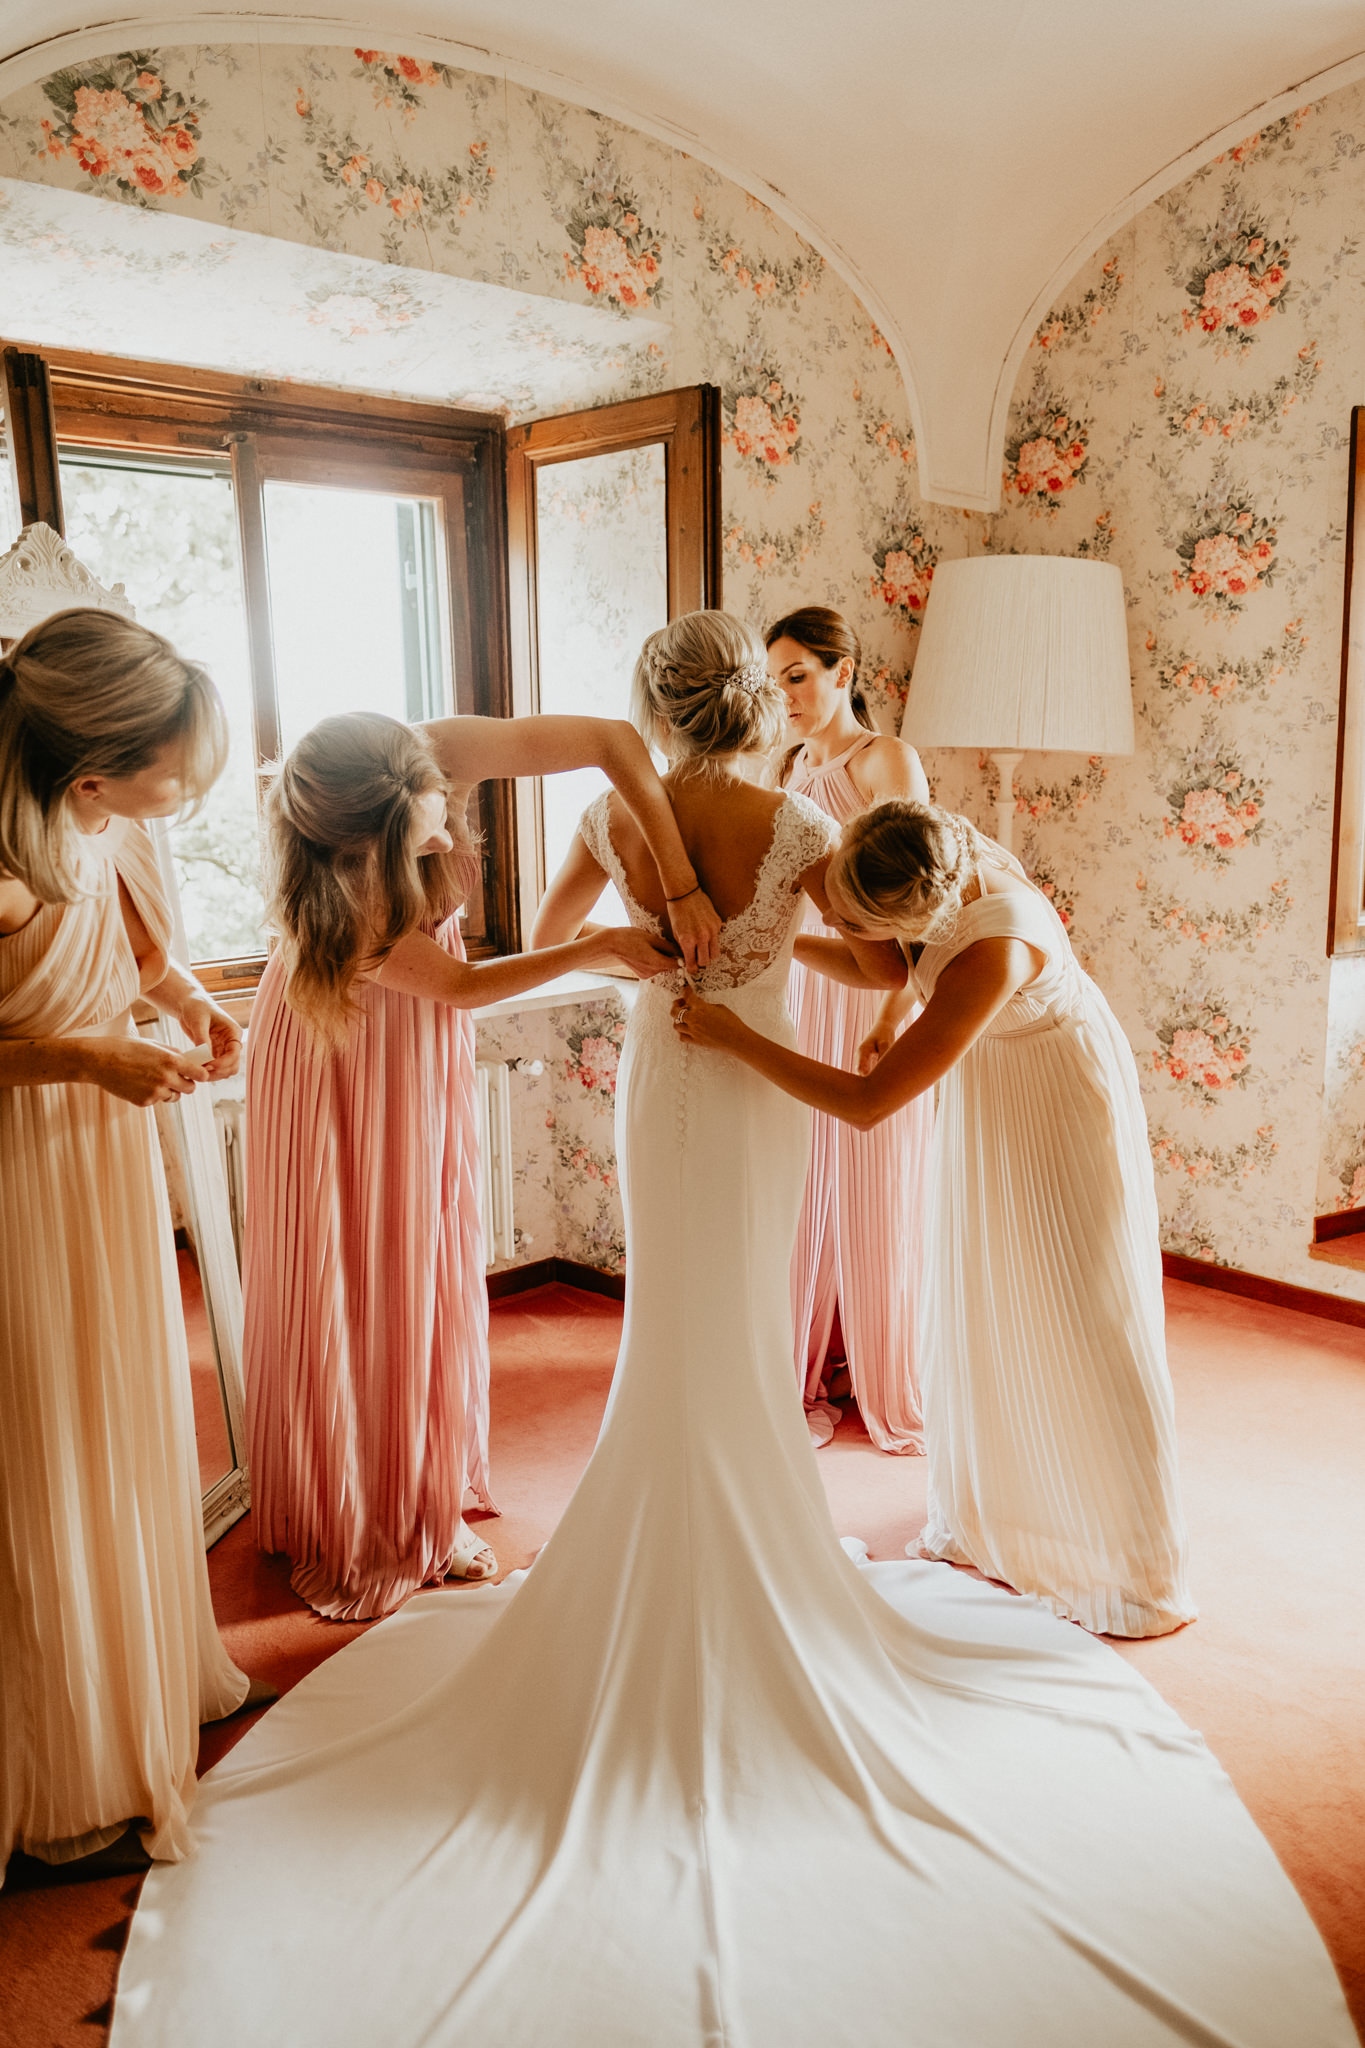 Wedding in Villa Ulignano, Volterra, Tuscany - Bride's getting ready